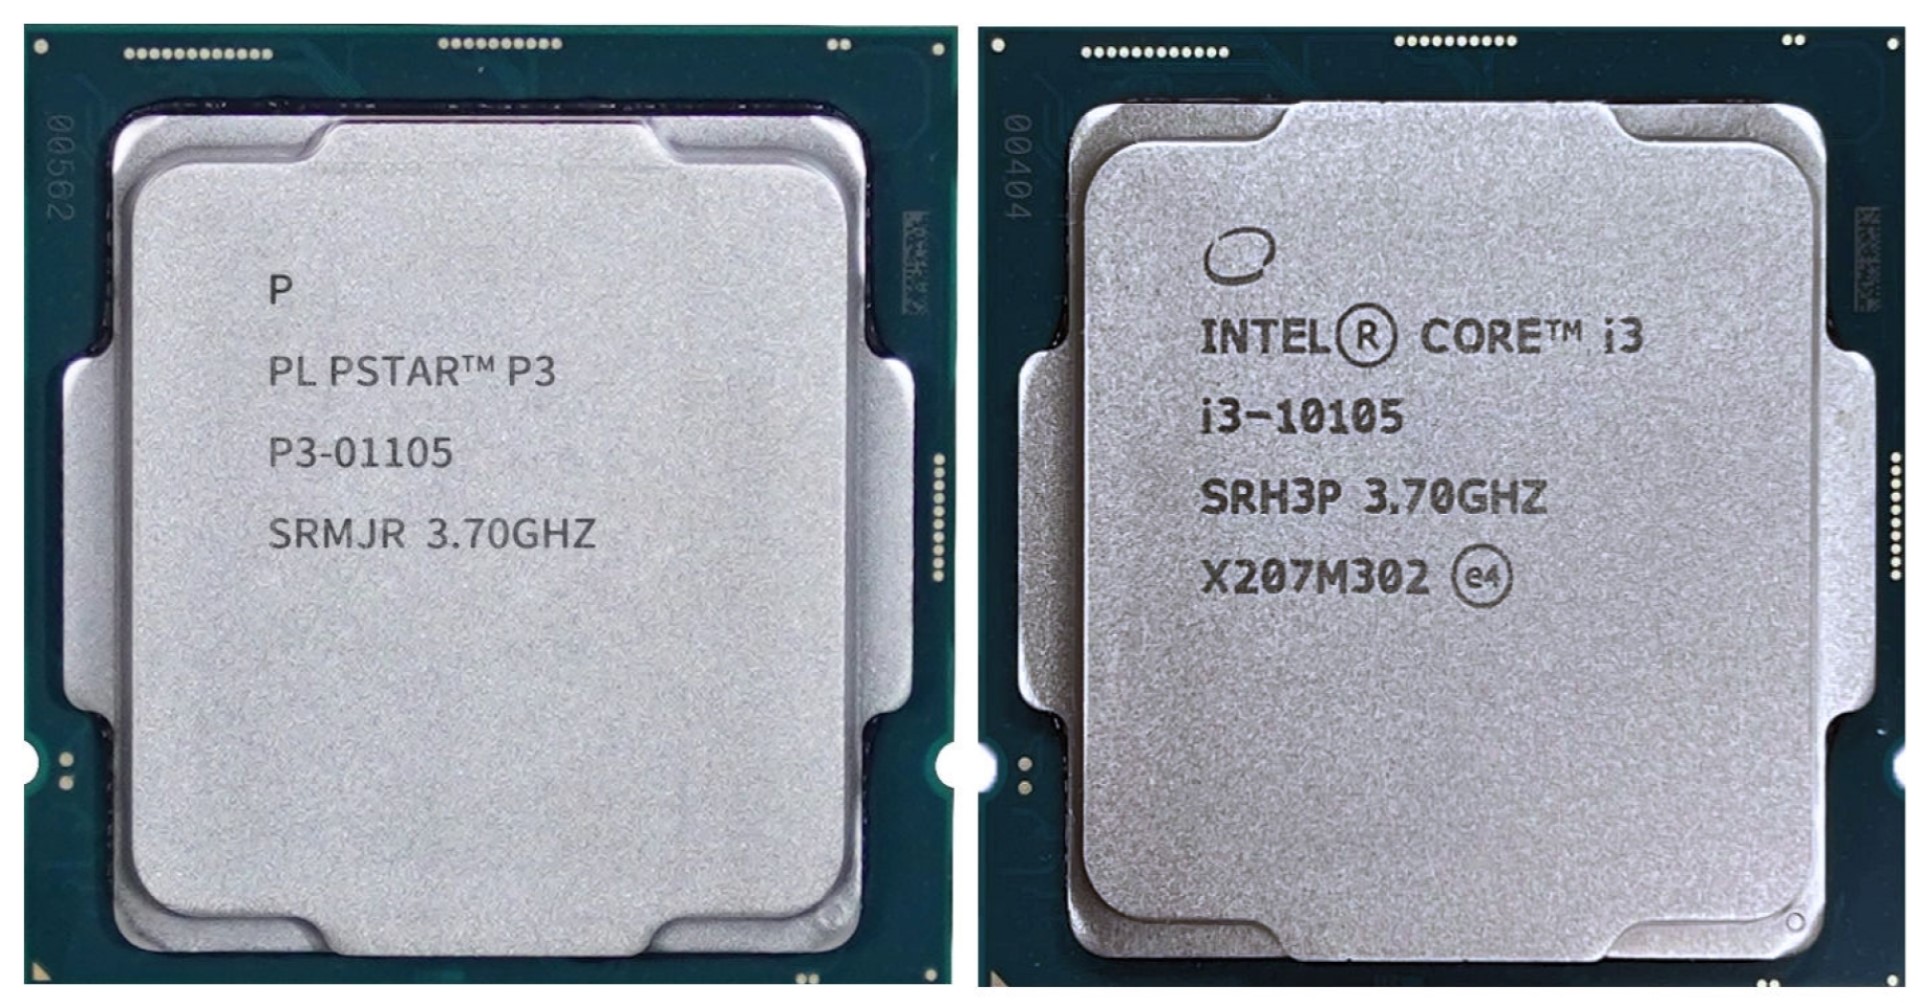 Baode บริษัทฮาร์ดแวร์จีนเผยว่าไม่ได้ลอก CPU ของ Intel แต่ Intel เข้ามาช่วย ‘สนับสนุน’